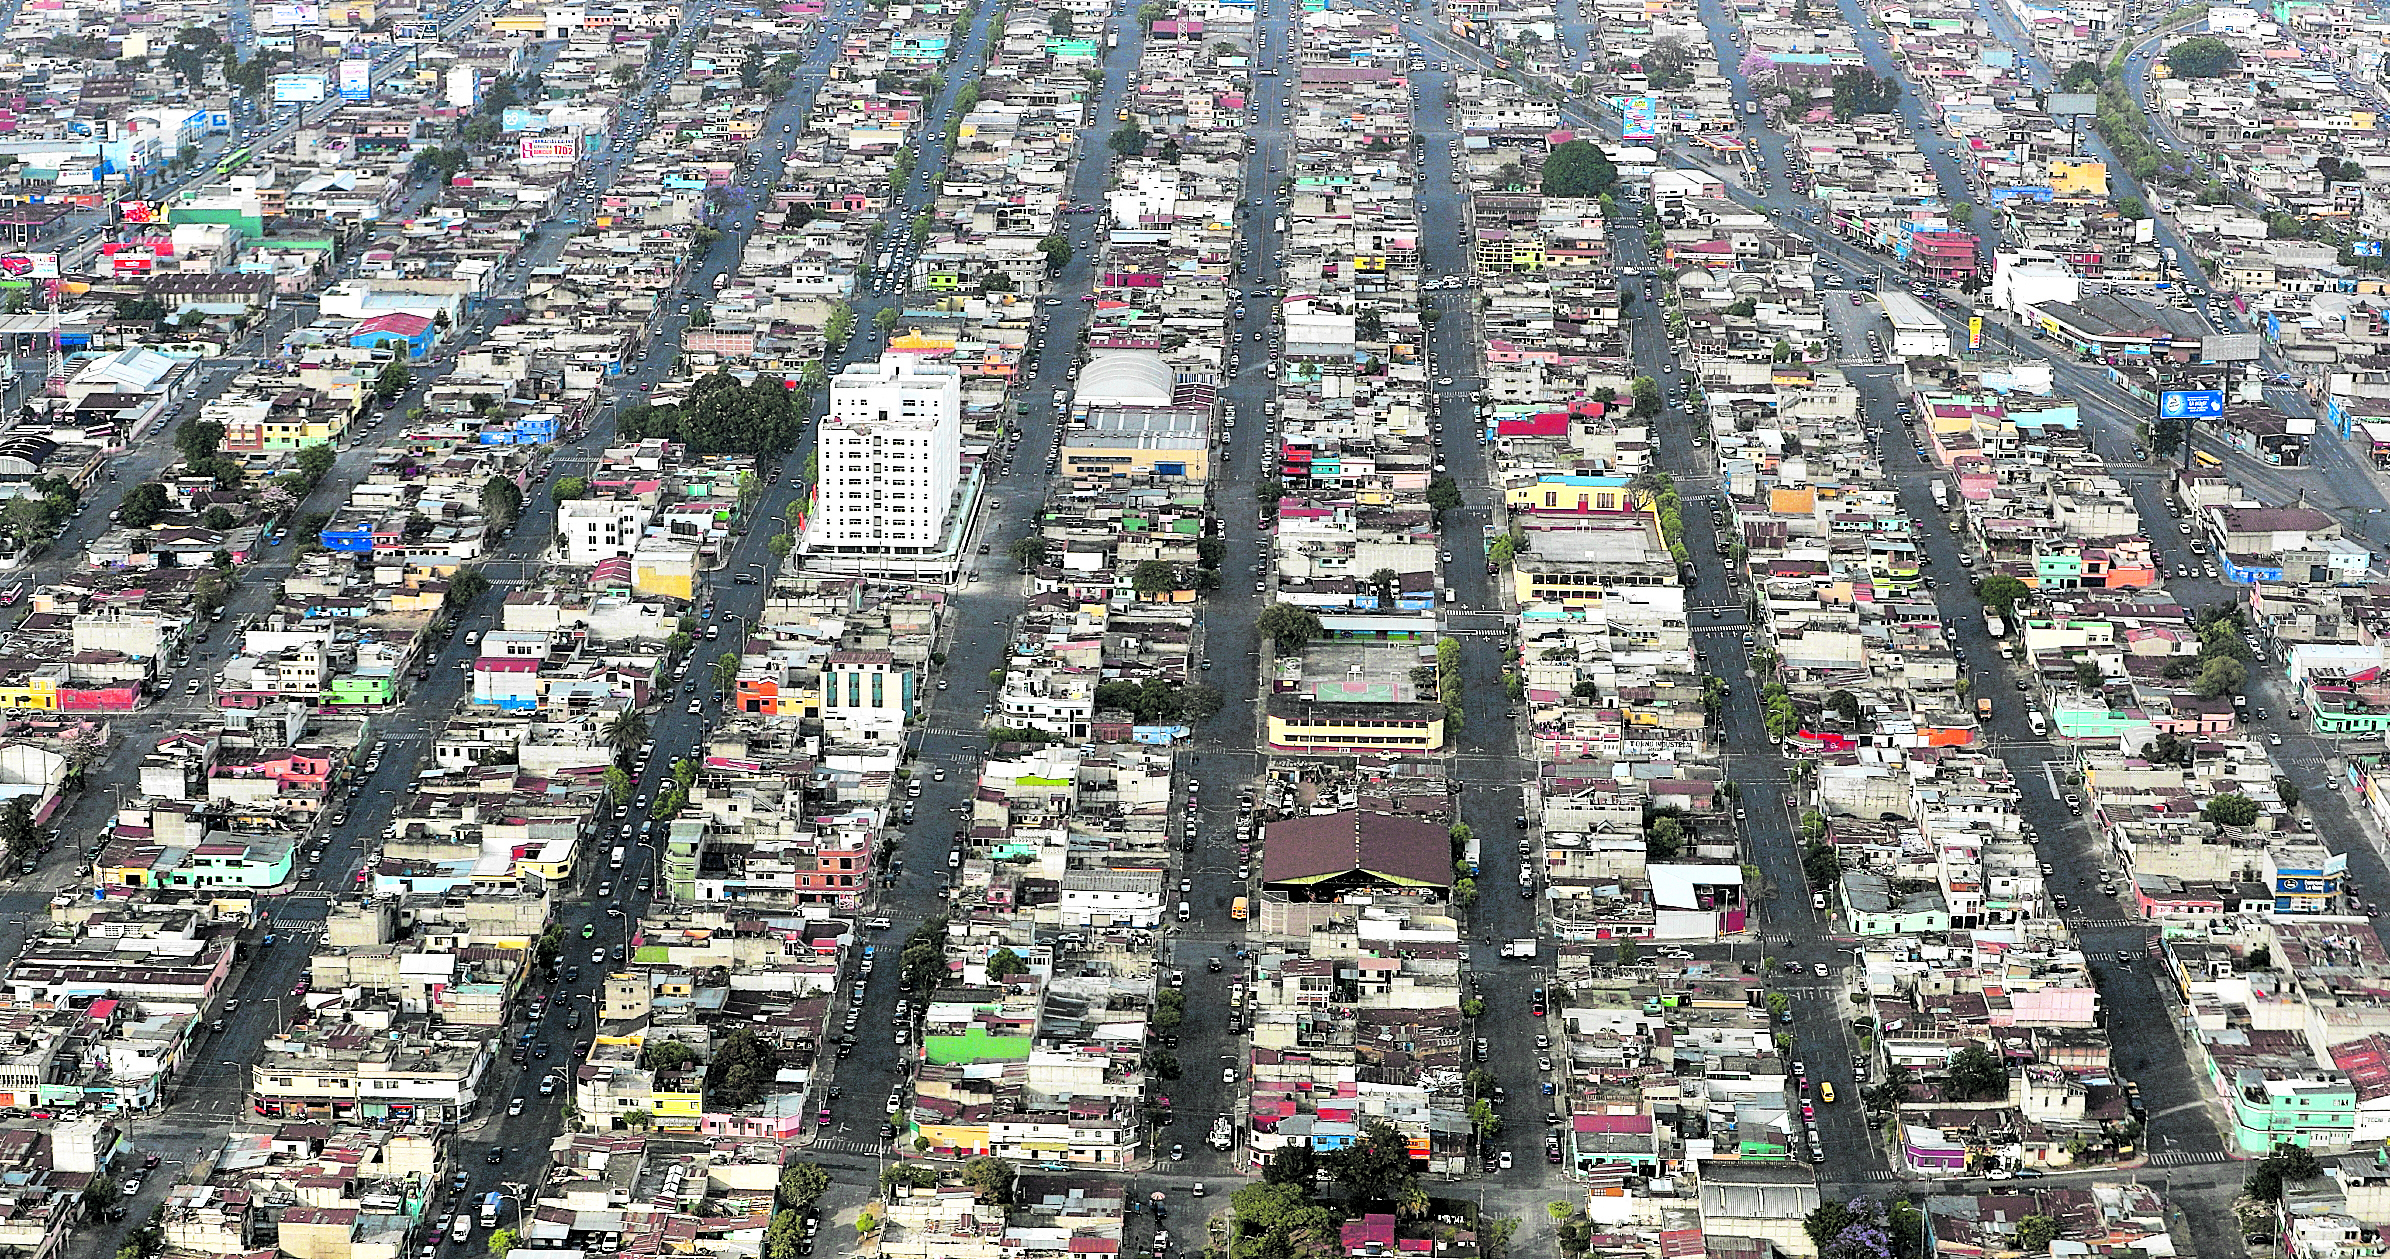 Vista aérea de ciudad de Guatemala. (Foto: Carlos Hernández)